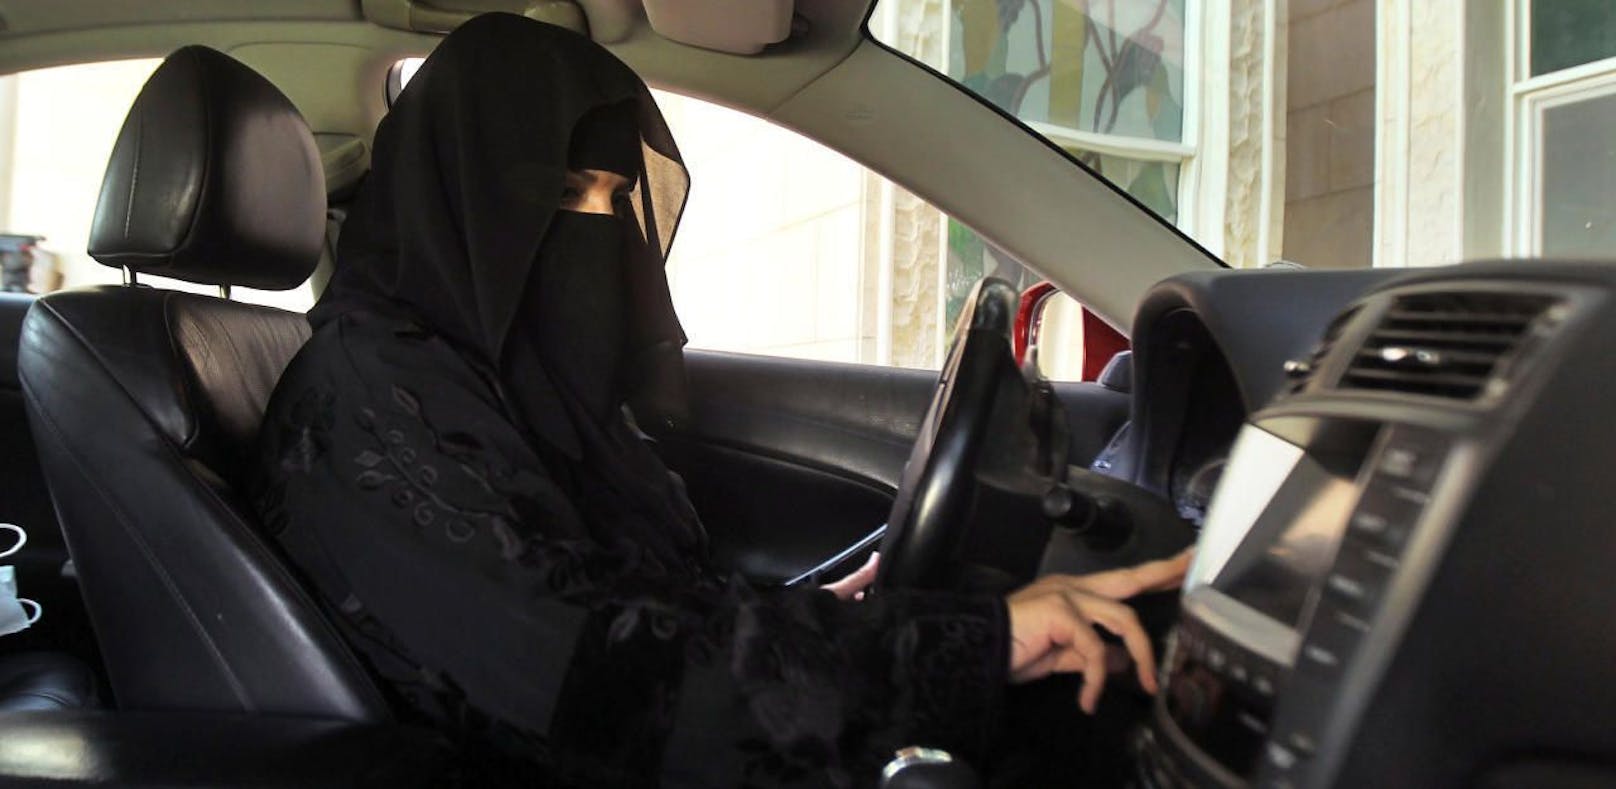 Ab nächstem Jahr dürfen Frauen in Saudi-Arabien erstmals ein Auto lenken.